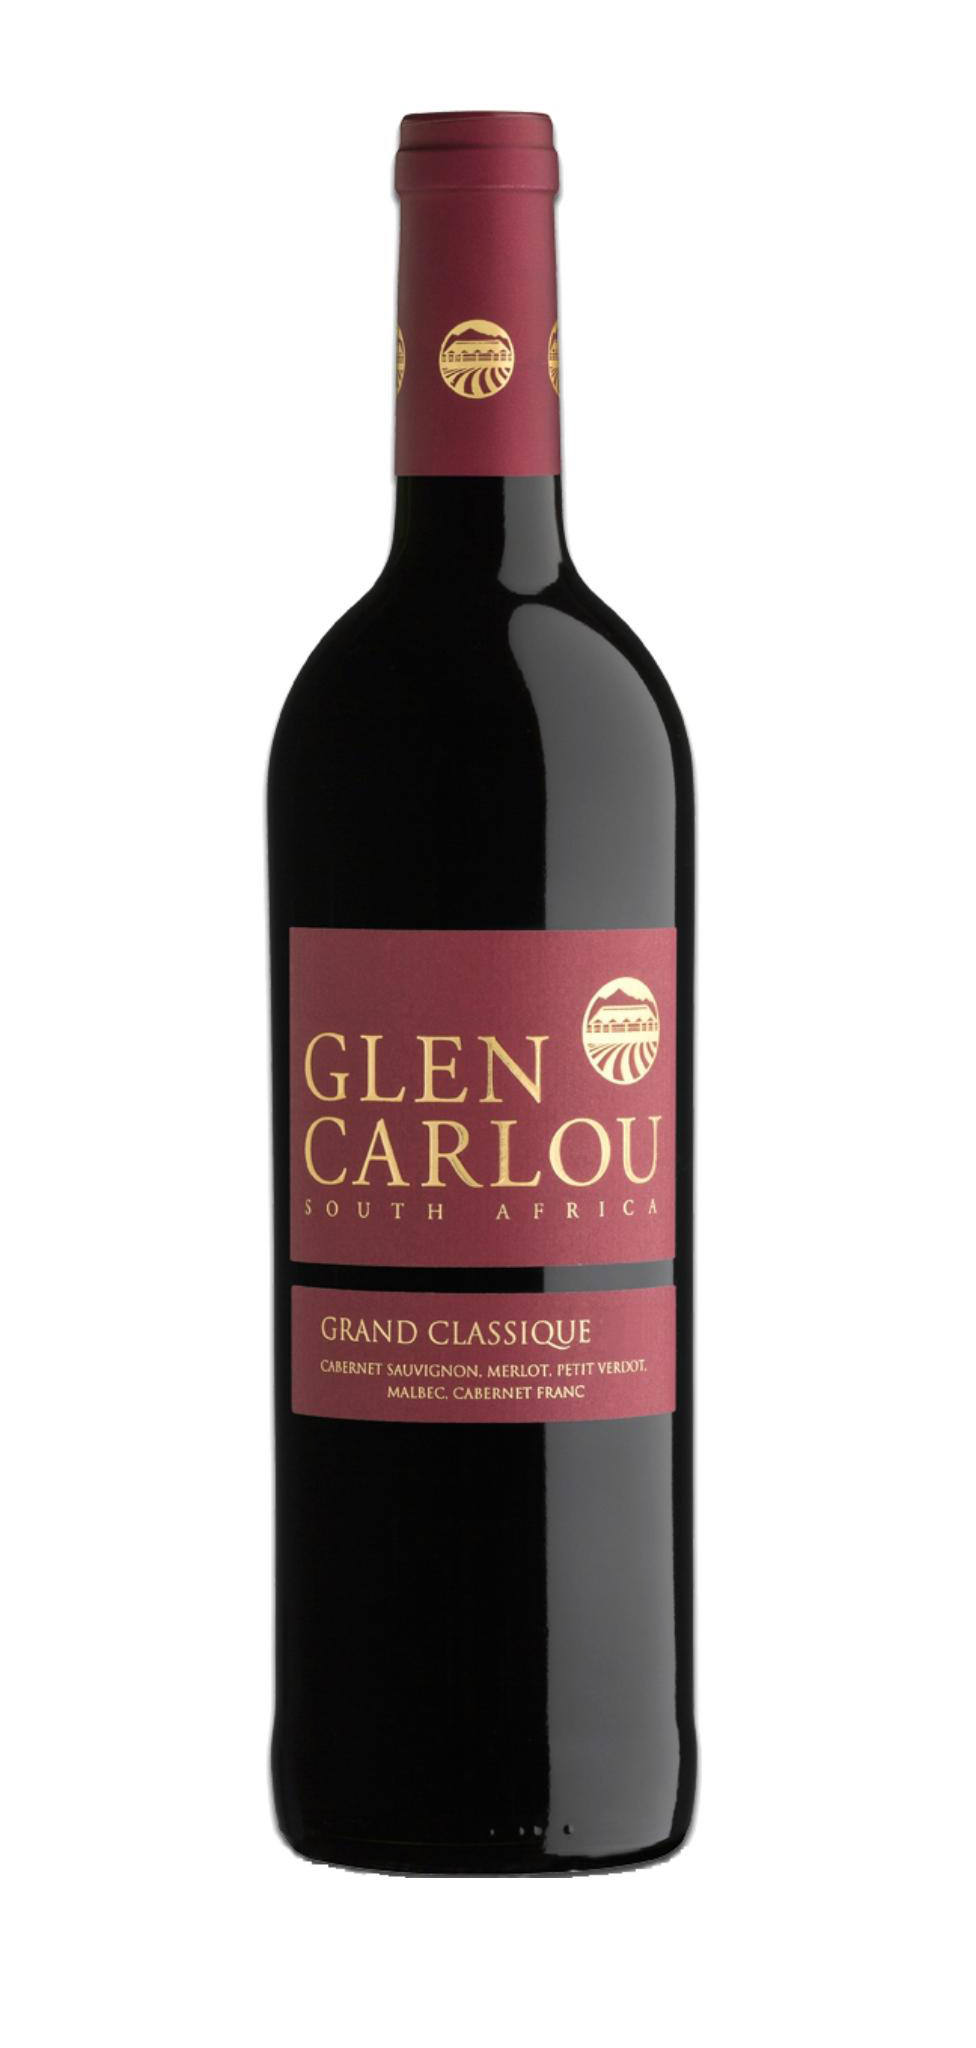 Grand Classique Glen Carlou 2015